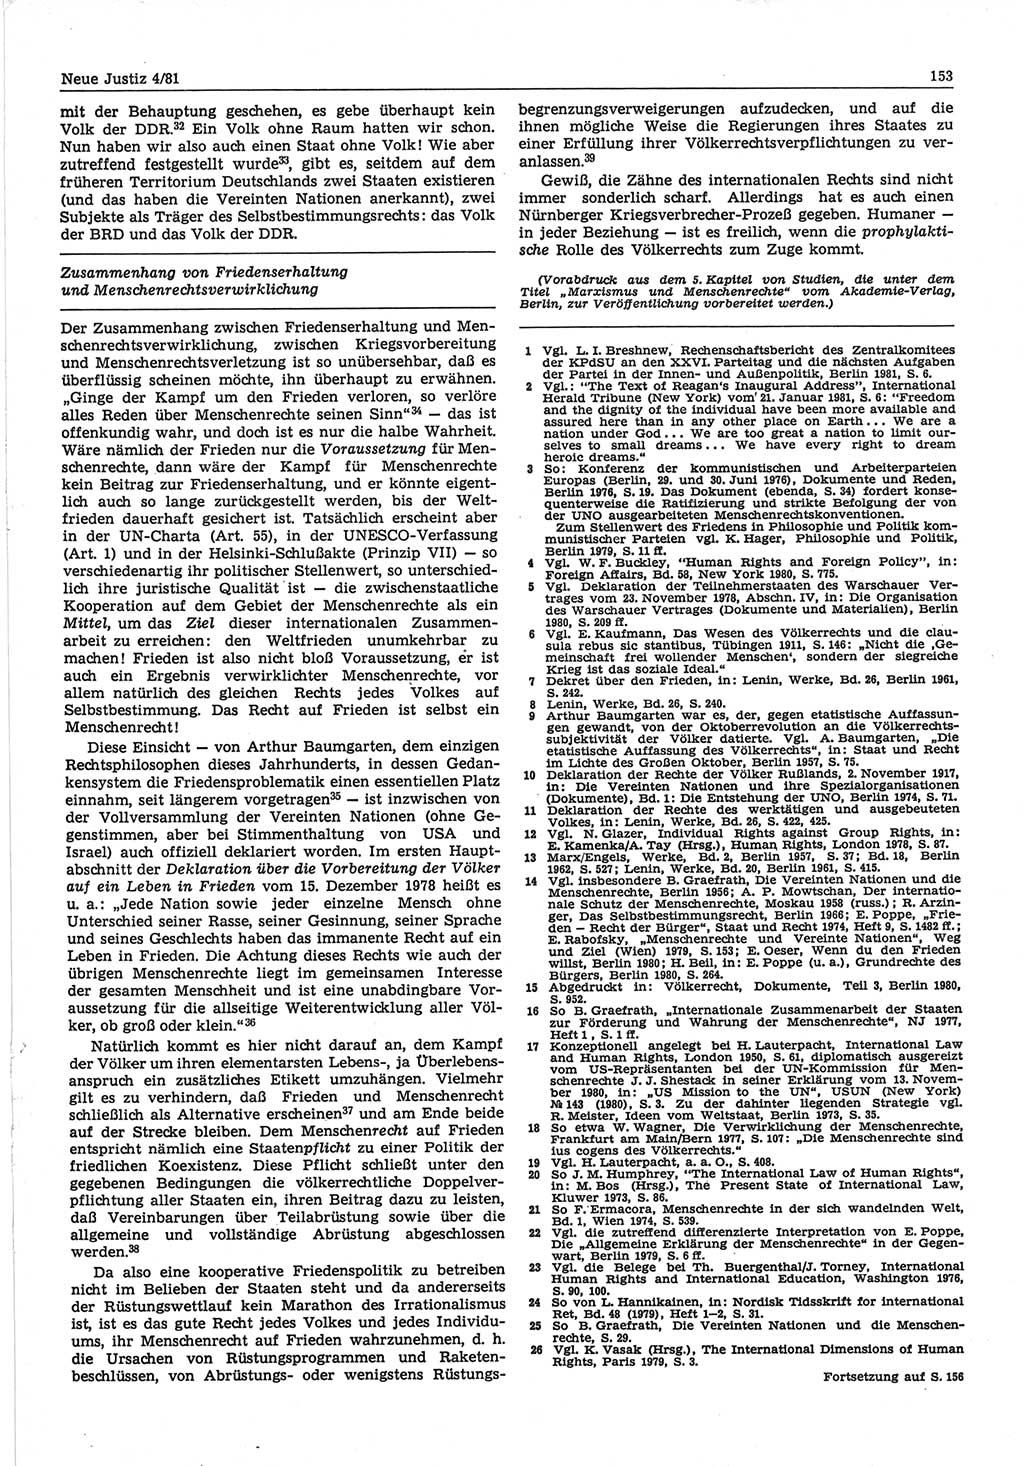 Neue Justiz (NJ), Zeitschrift für sozialistisches Recht und Gesetzlichkeit [Deutsche Demokratische Republik (DDR)], 35. Jahrgang 1981, Seite 153 (NJ DDR 1981, S. 153)